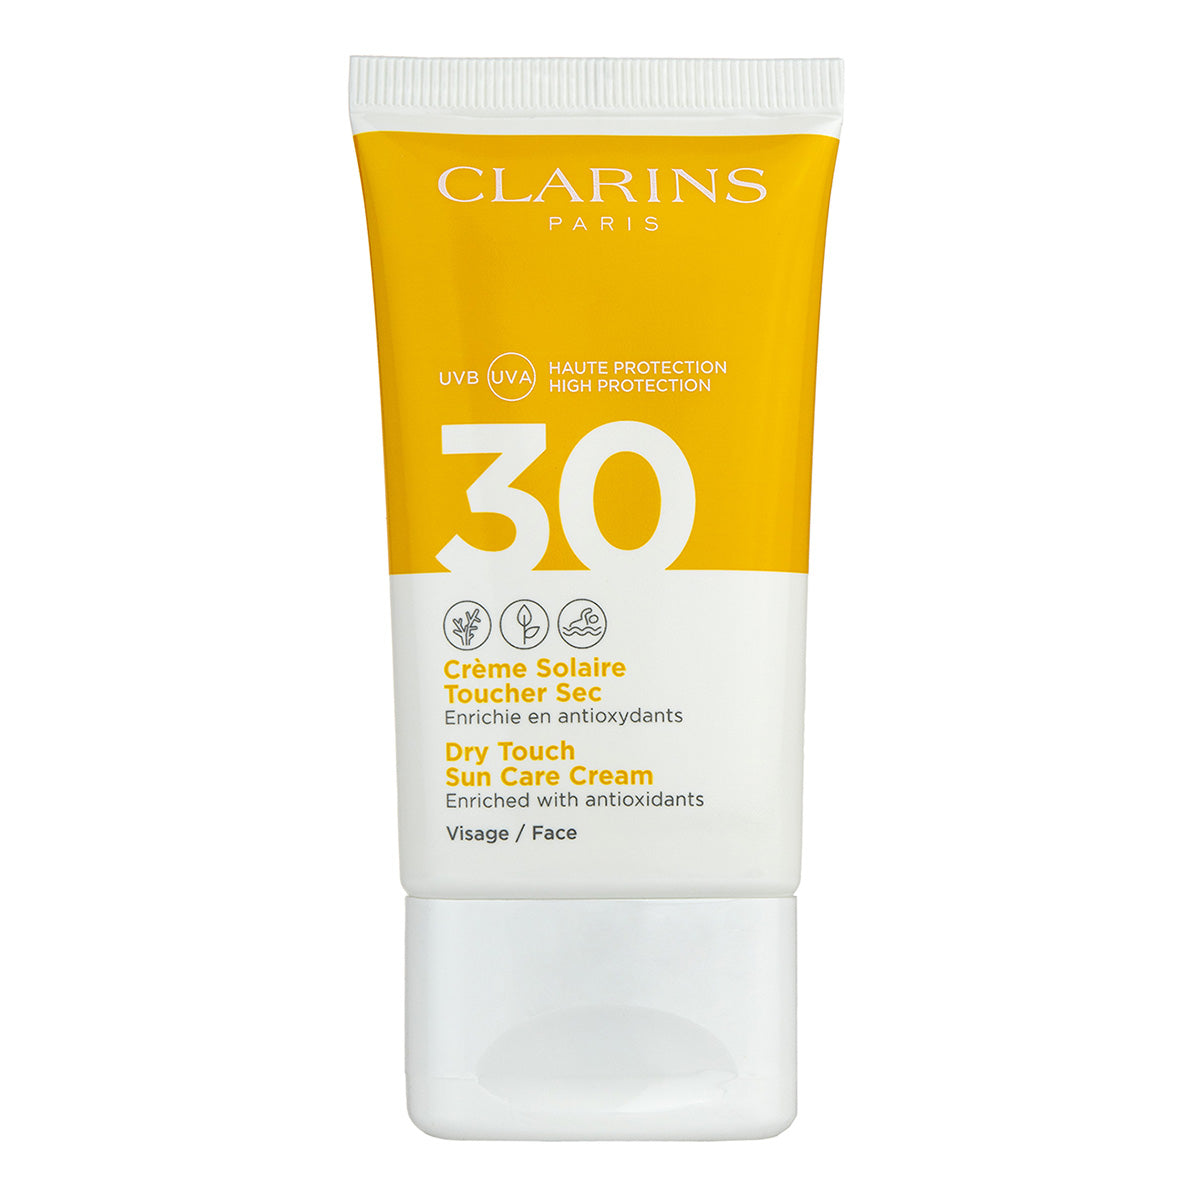 Clarins uva 30 face dry touch sun cream